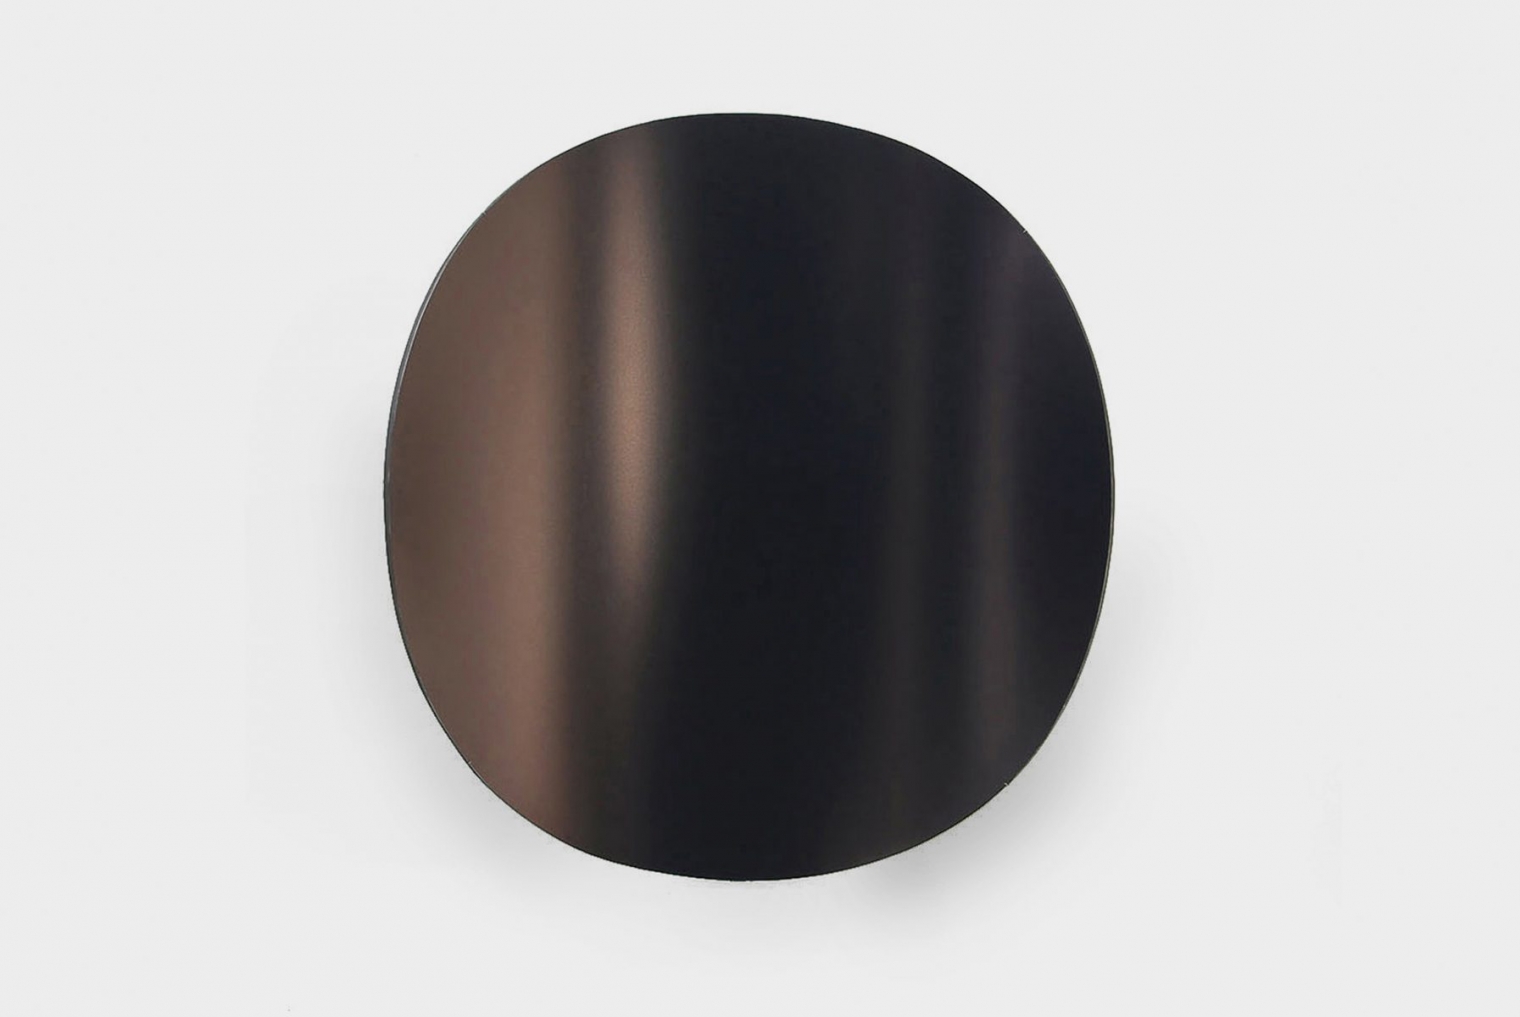 MIRROR/01  Material: wood, plexsi-glass, UV print; Dimension: 100 x 85 x 15 cm; Date: 2013-2015